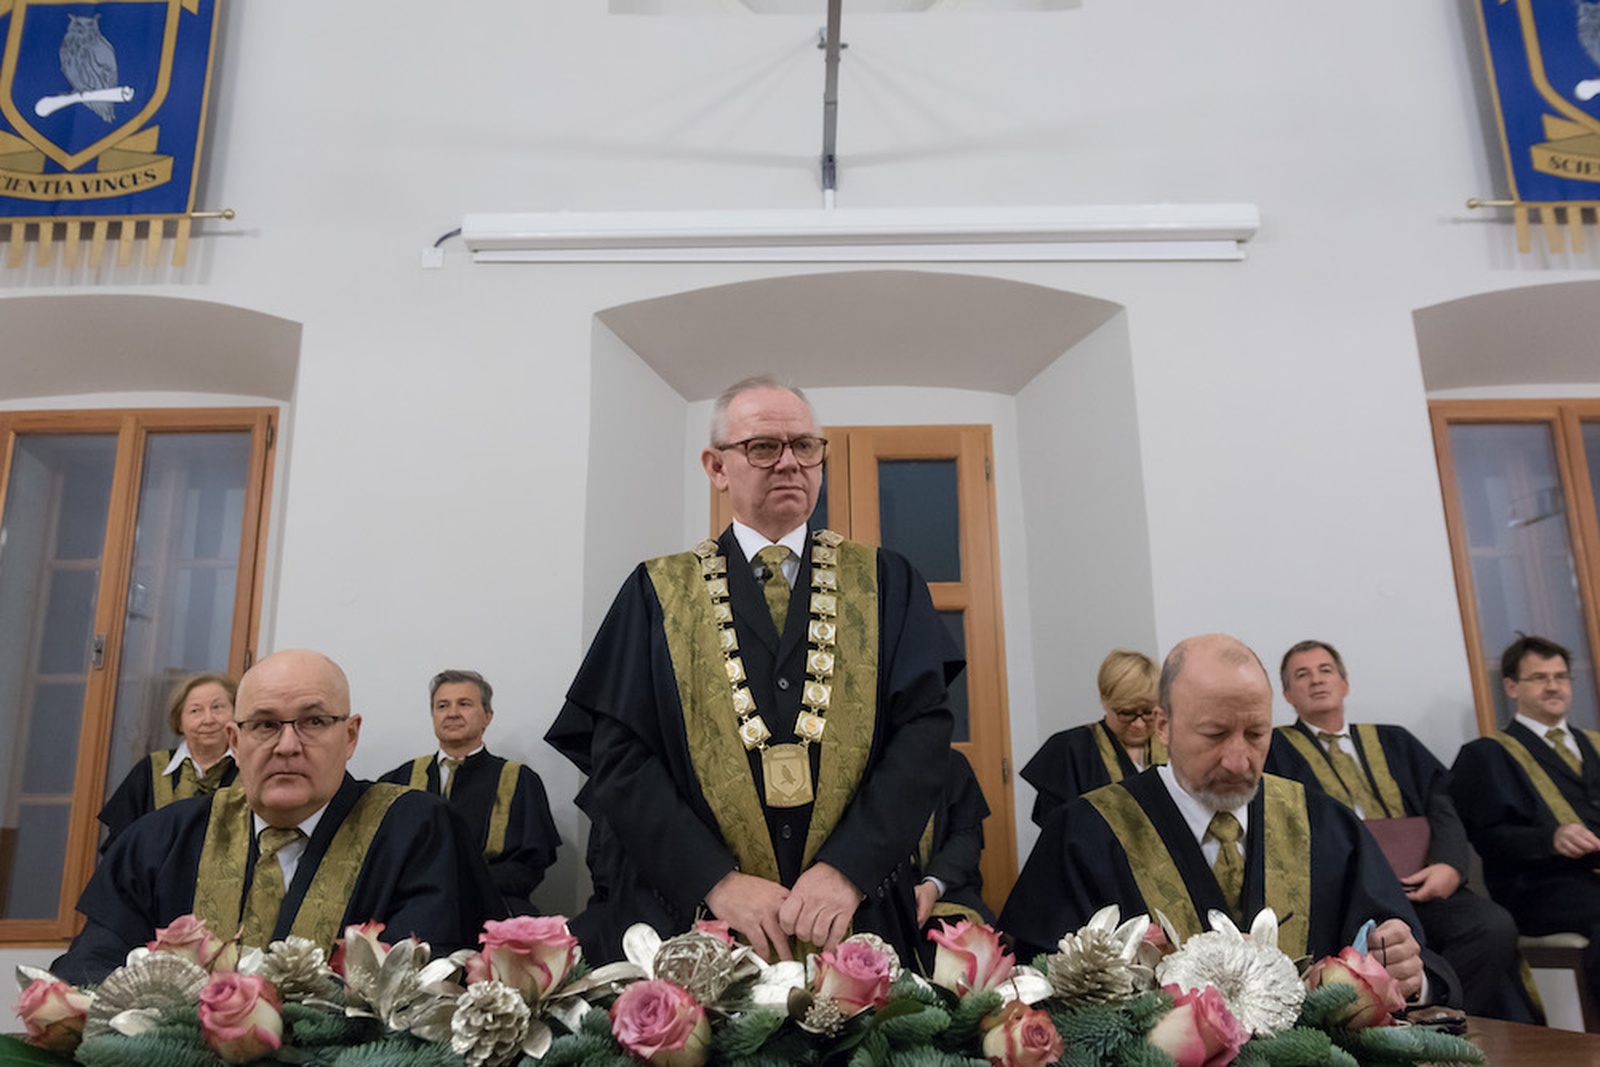 Rector, Vice-rectors and Deans of the University of Nova Gorica. Photo: Miha Godec